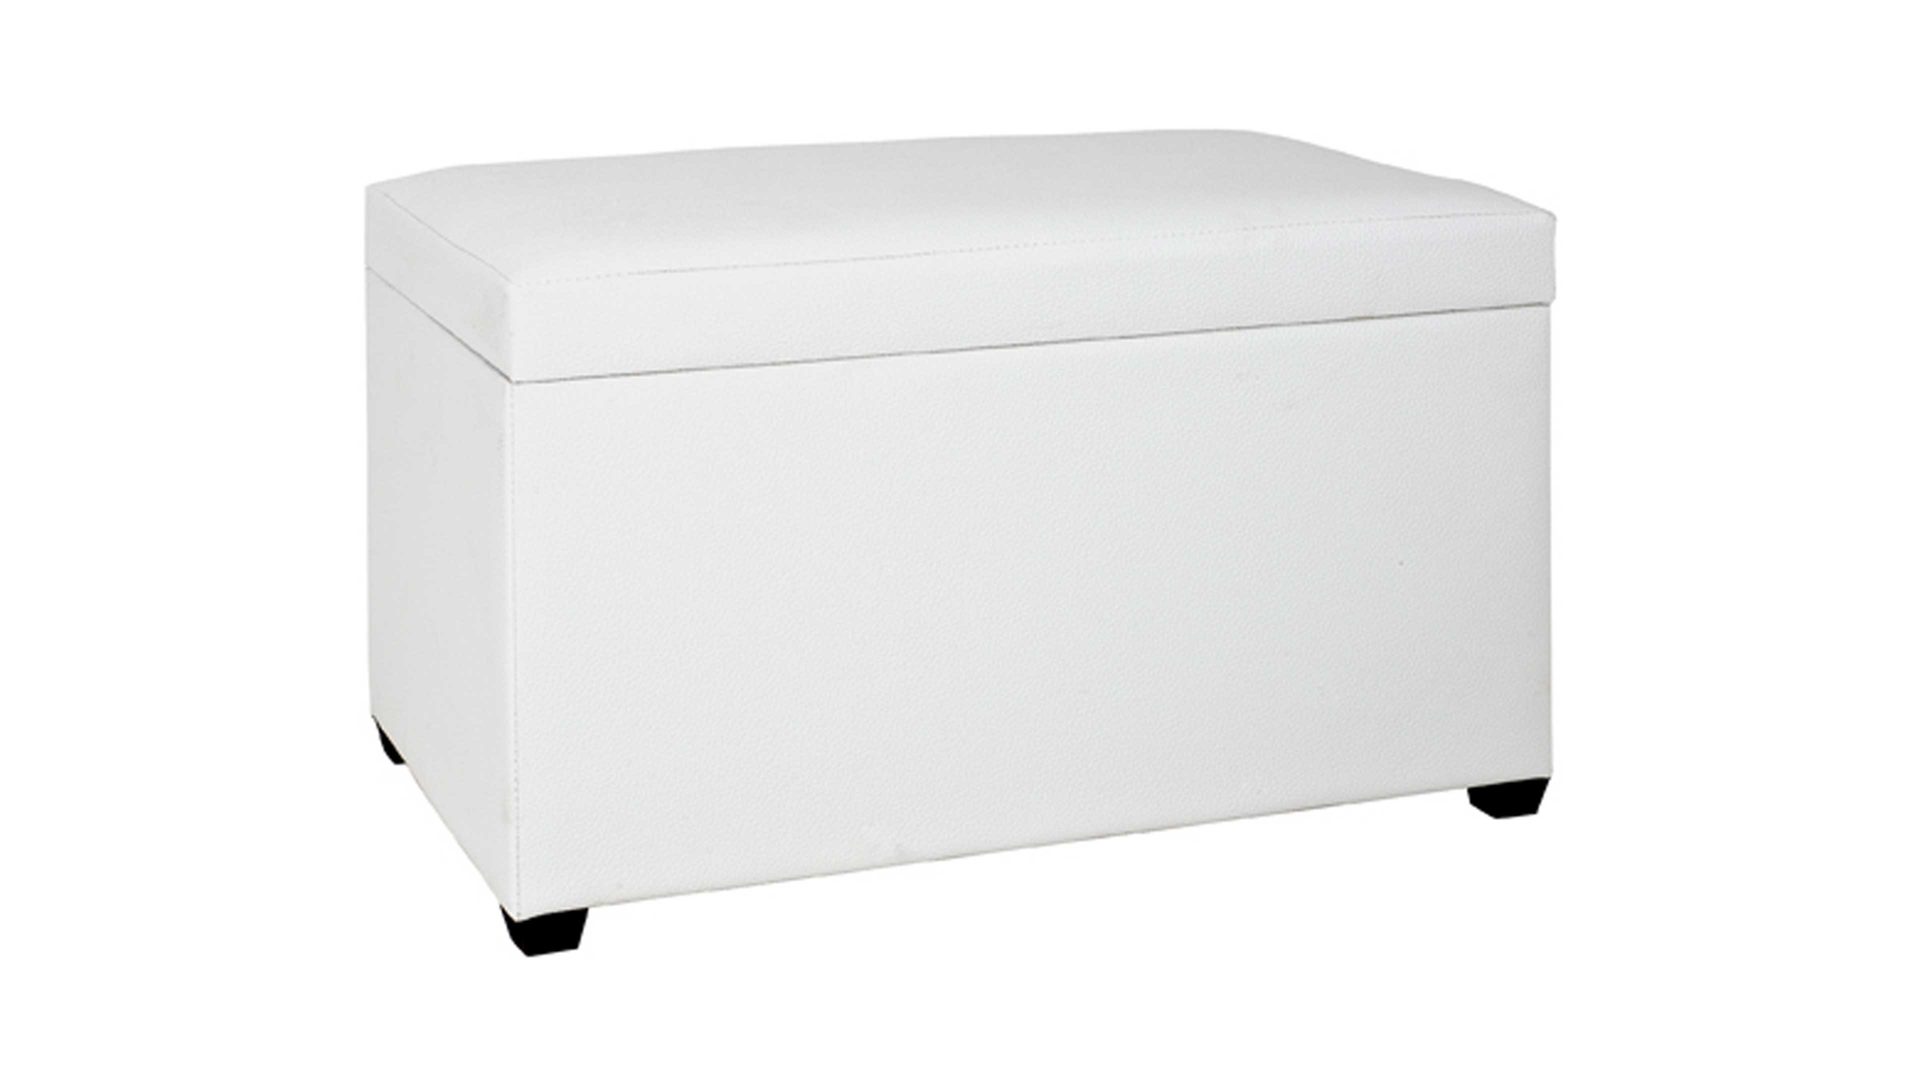 Truhe Haku aus Stoff in Weiß Sitztruhe mit Stauraum als Sitzmöbel weißes Kunstleder - ca. 65 x 42 x 40 cm